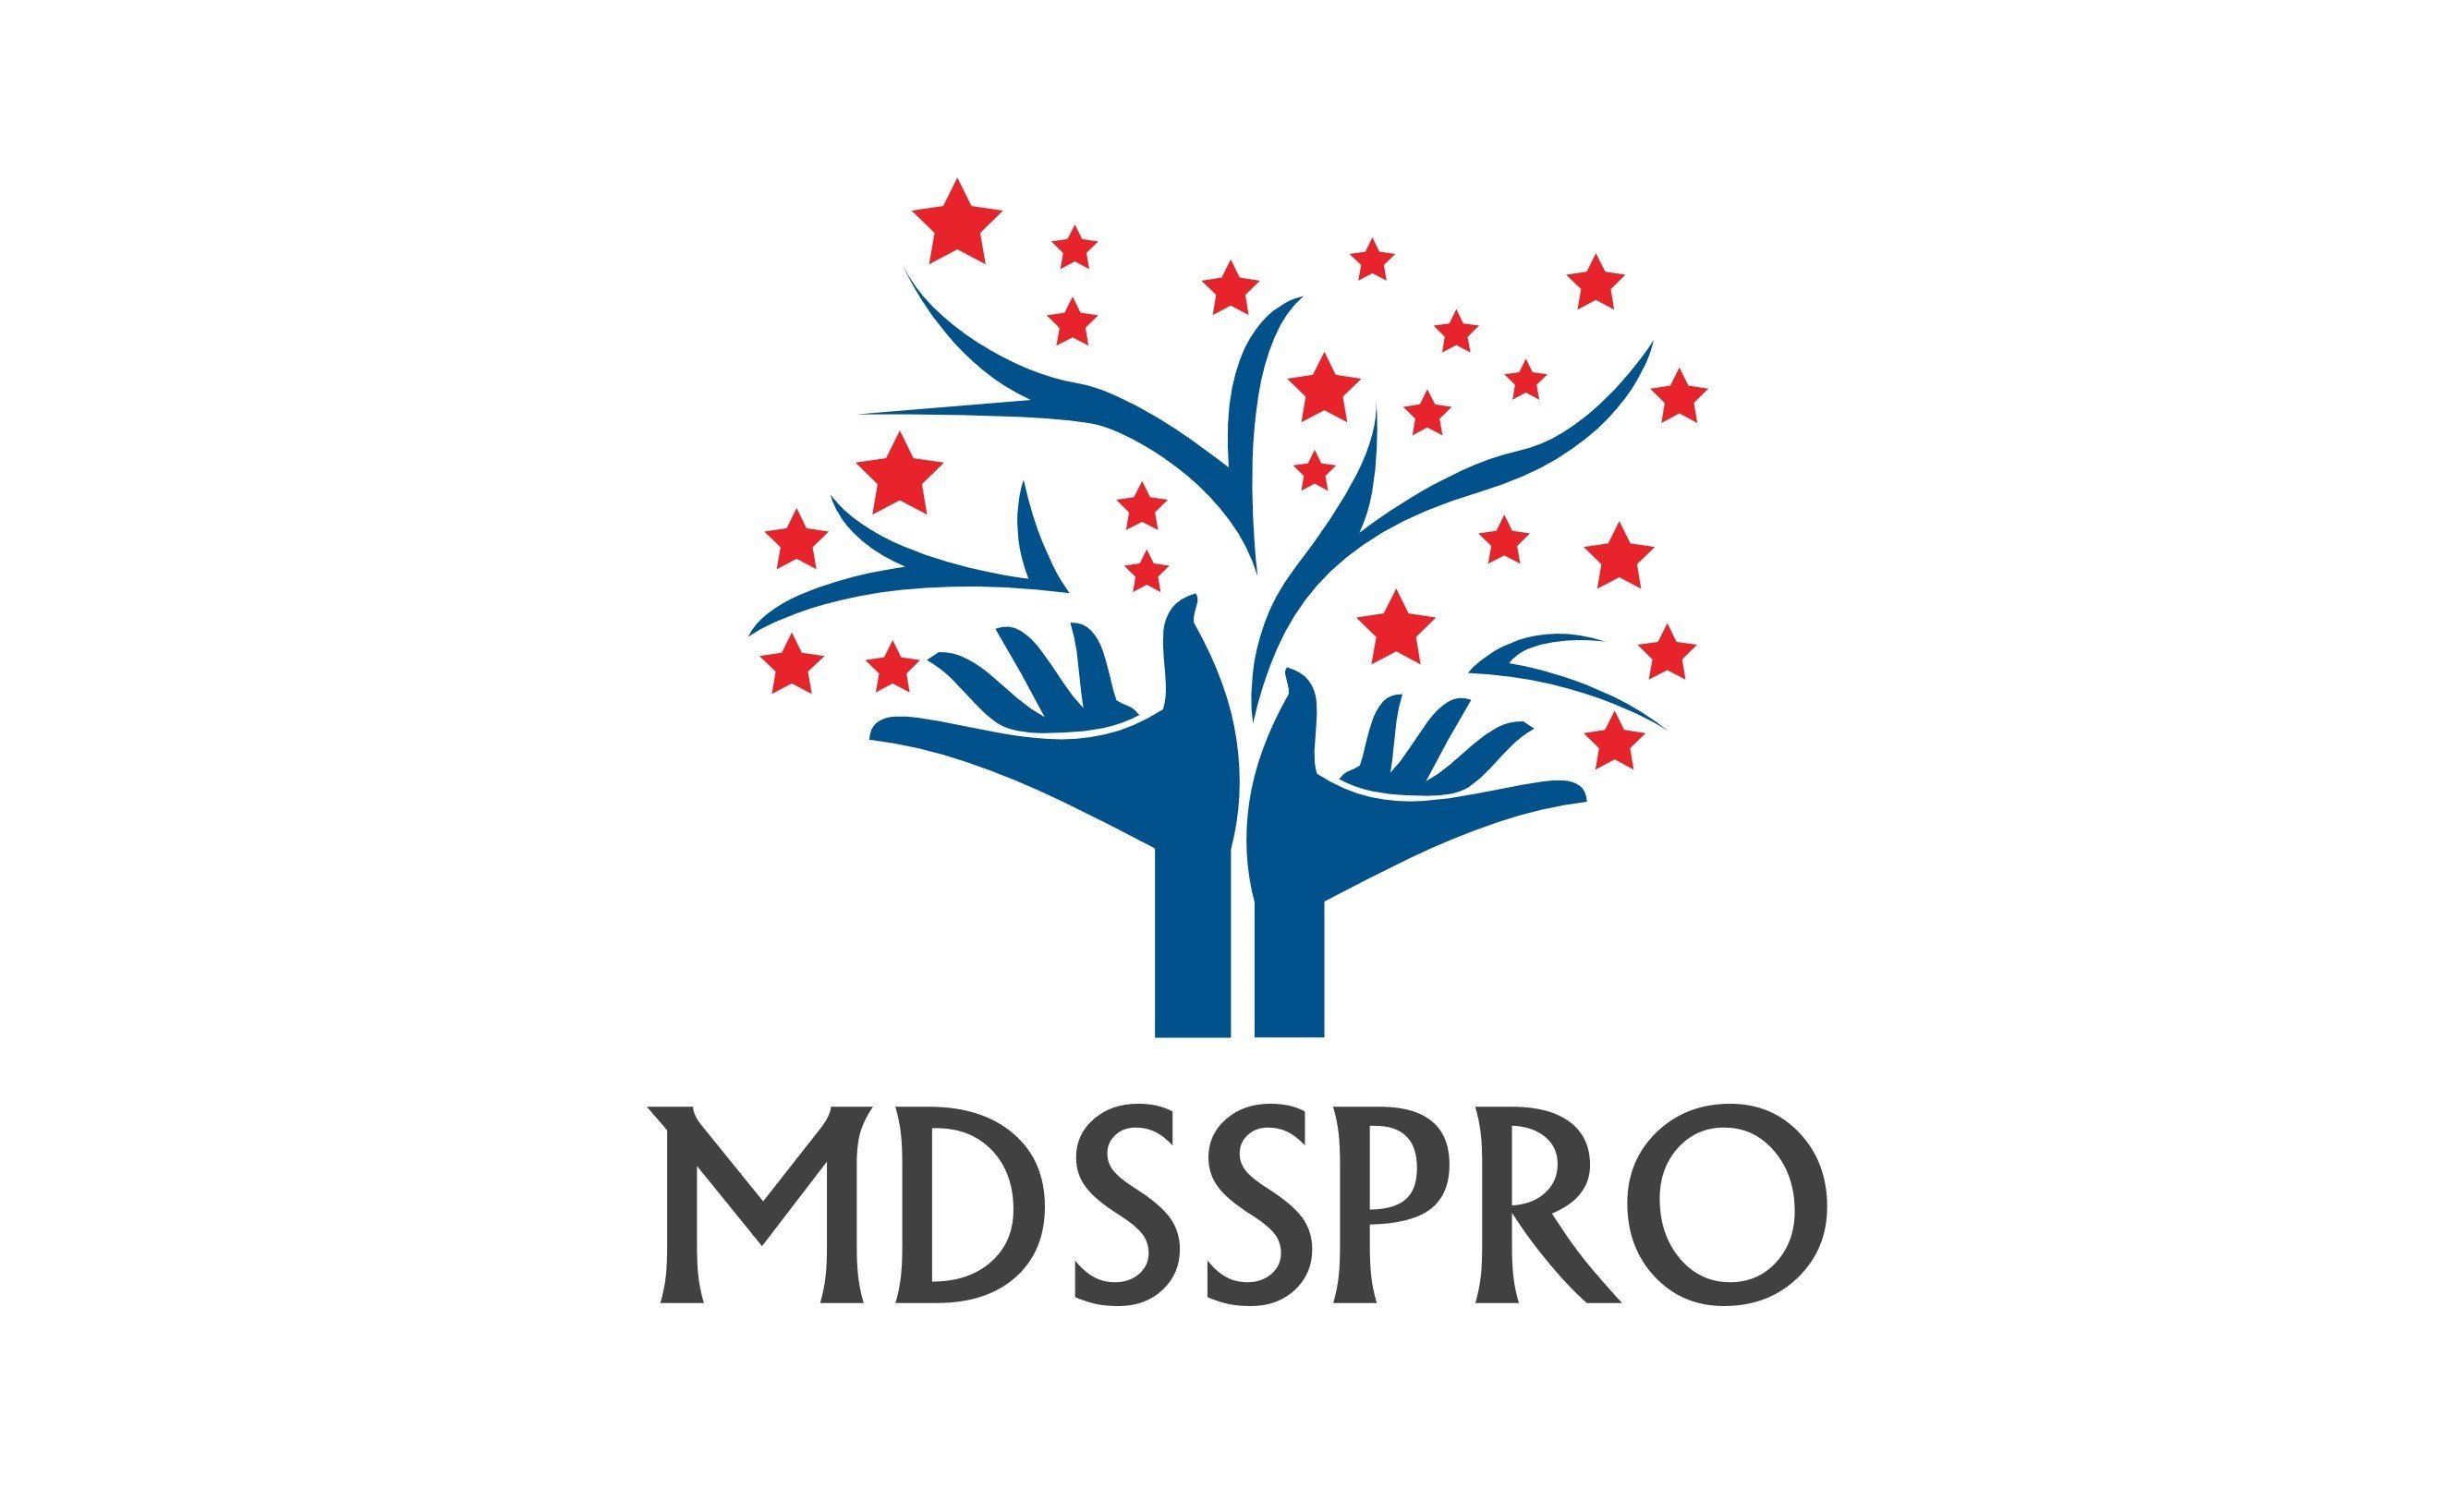 Mdsspro logo